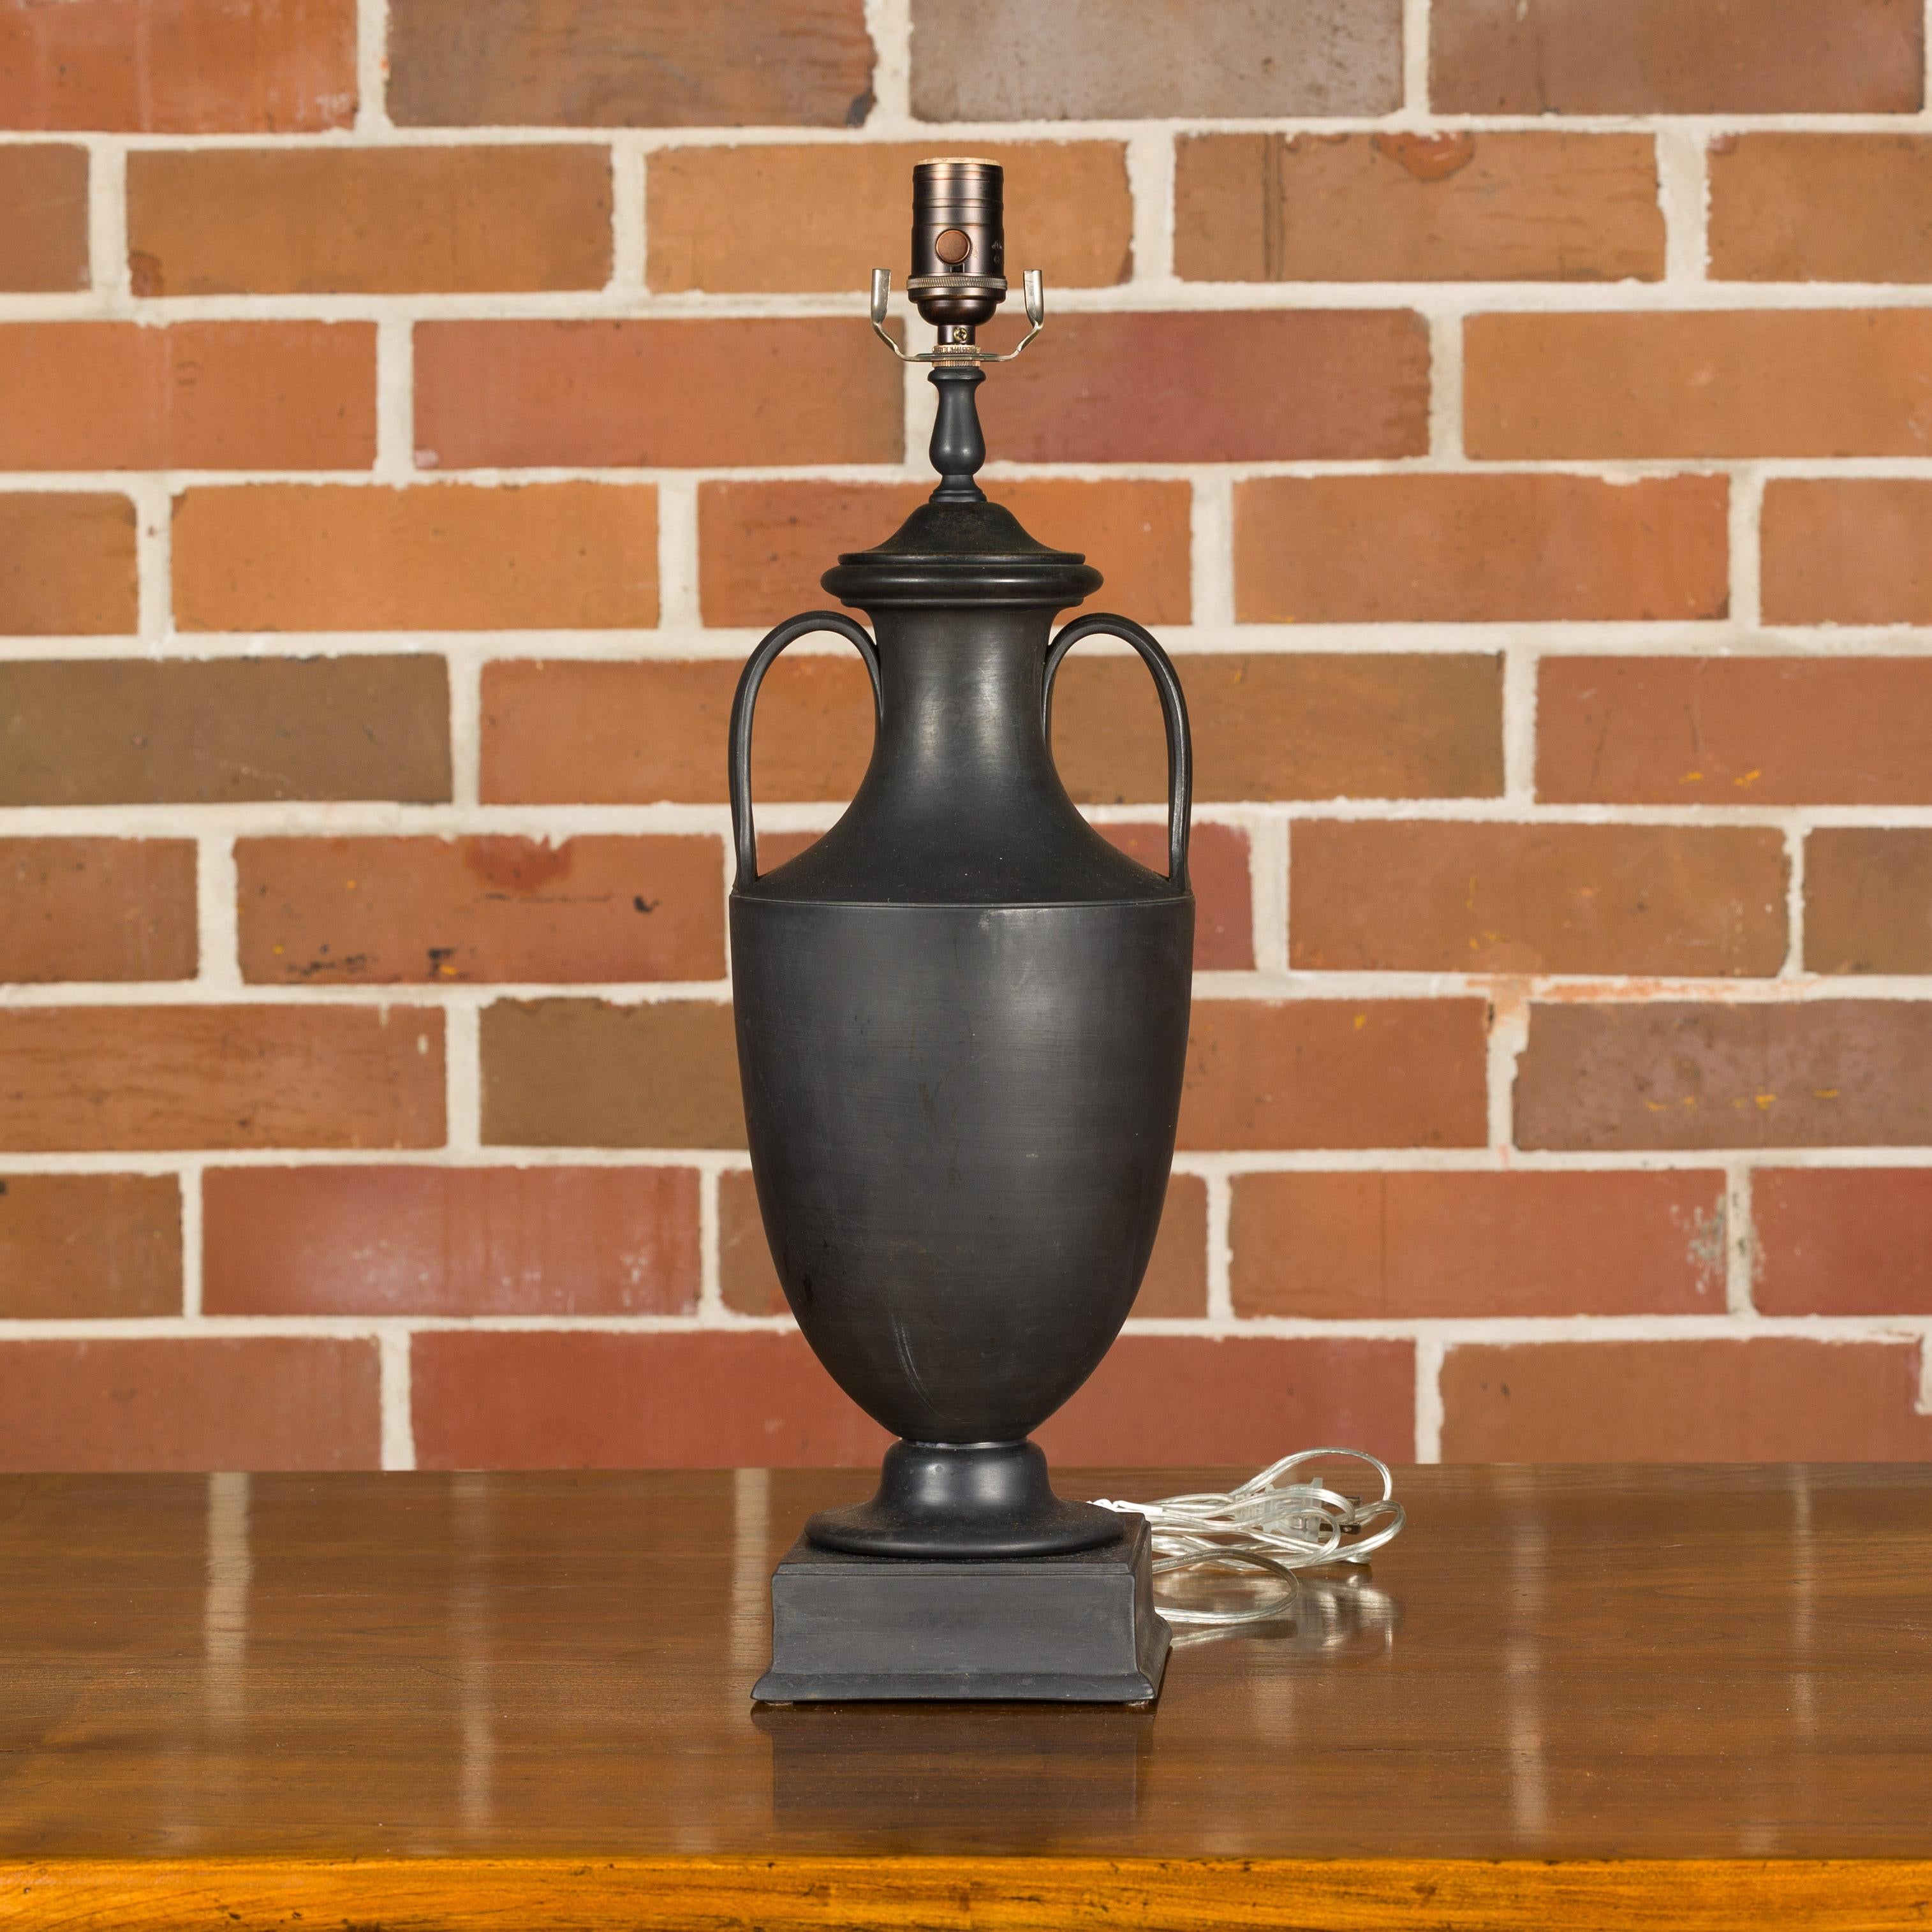 Une amphore en basalte de Wedgwood datant du XIXe siècle transformée en lampe de table à une seule douille, câblée pour les États-Unis. Cette exquise amphore en basalte de Wedgwood datant du XIXe siècle a été transformée de main de maître en une